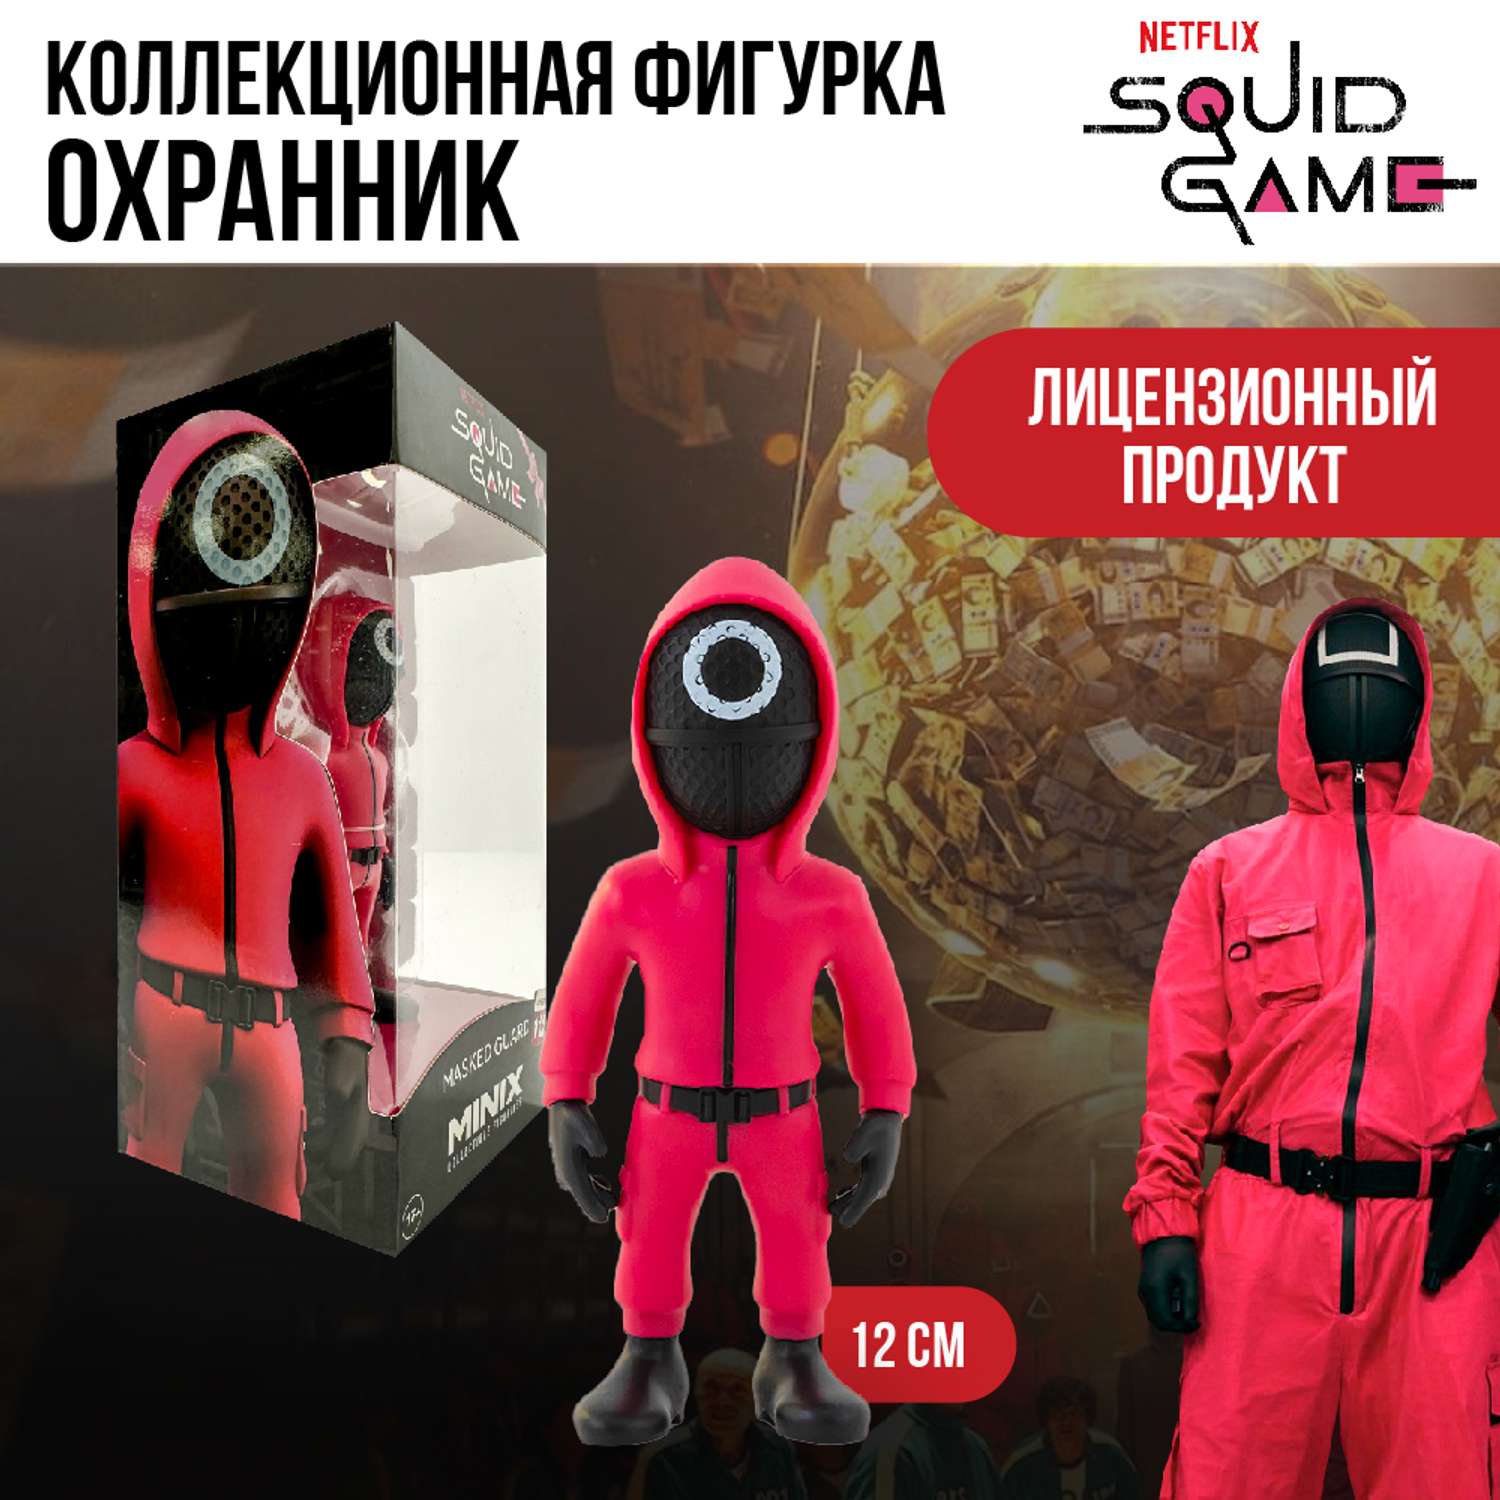 Игрушка фигурка Minix Игра в кальмара Охранник в маске 12 см 13746 - фото 7